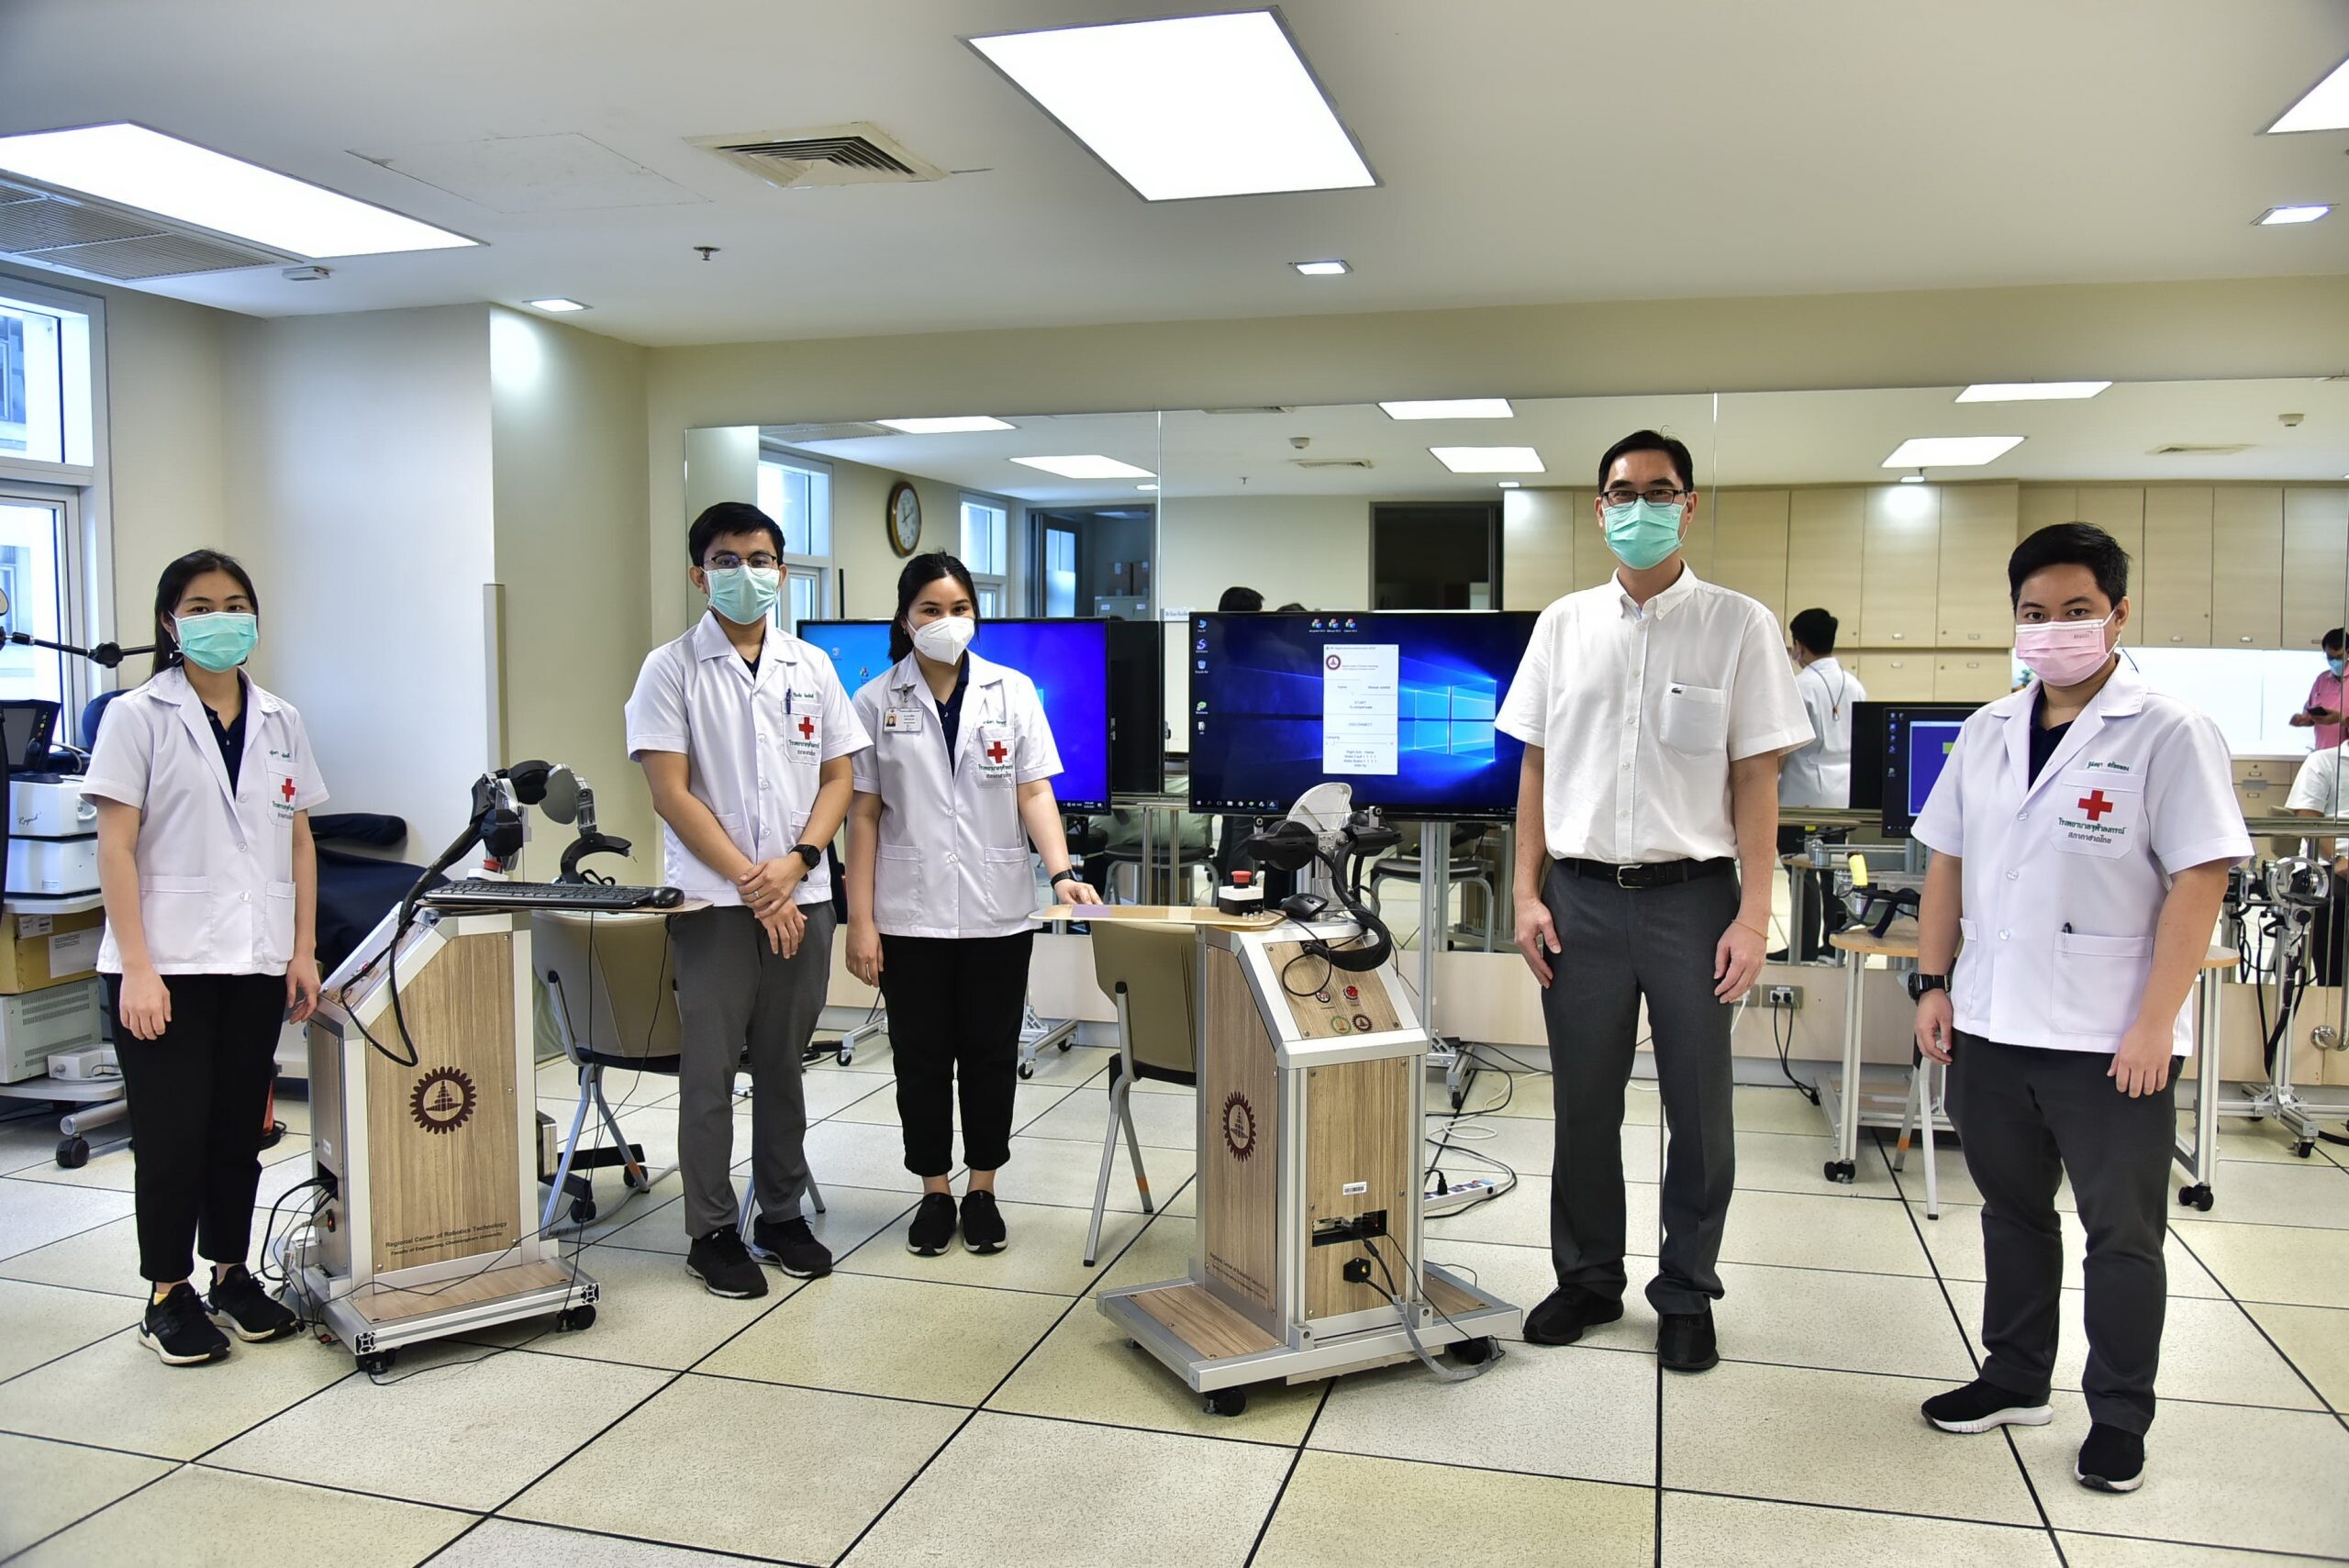 ผู้ป่วยโรคหลอดเลือดสมองฟื้นฟูได้ ด้วยหุ่นยนต์ฟื้นฟูสมรรถภาพ นวัตกรรมเพื่อคนไทยโดยวิศวฯ และแพทย์ จุฬาฯ